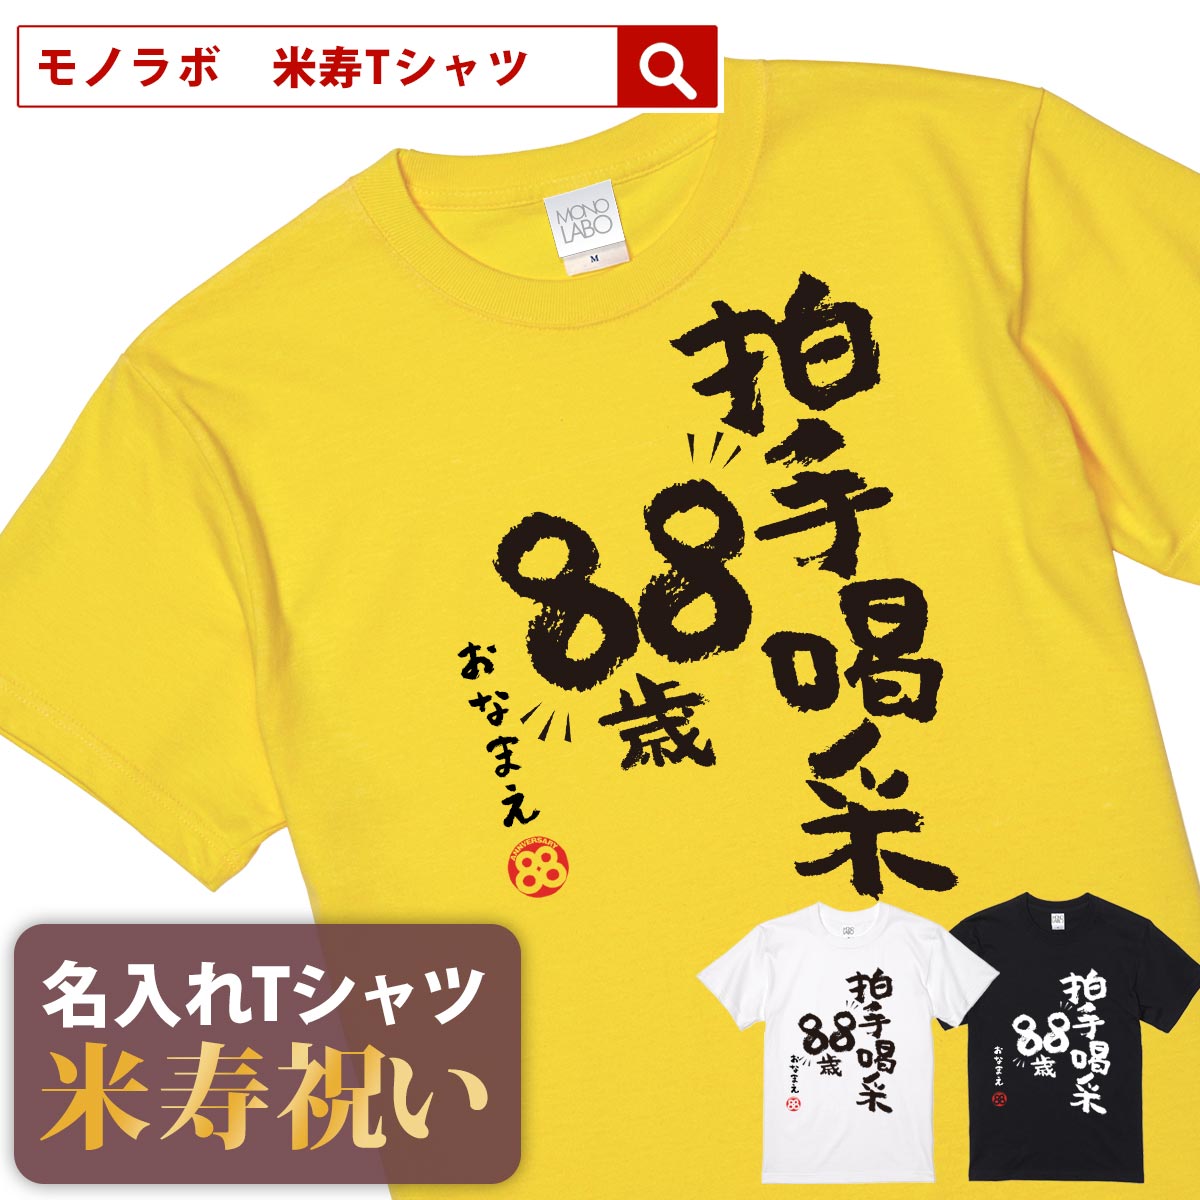 米寿祝い tシャツ 米寿 おもしろ 名入れ 黄色 男性 女性 父 母 プレゼント ちゃんちゃんこの代わり。Tシャツ 送料無料！ 【拍手喝采88歳】